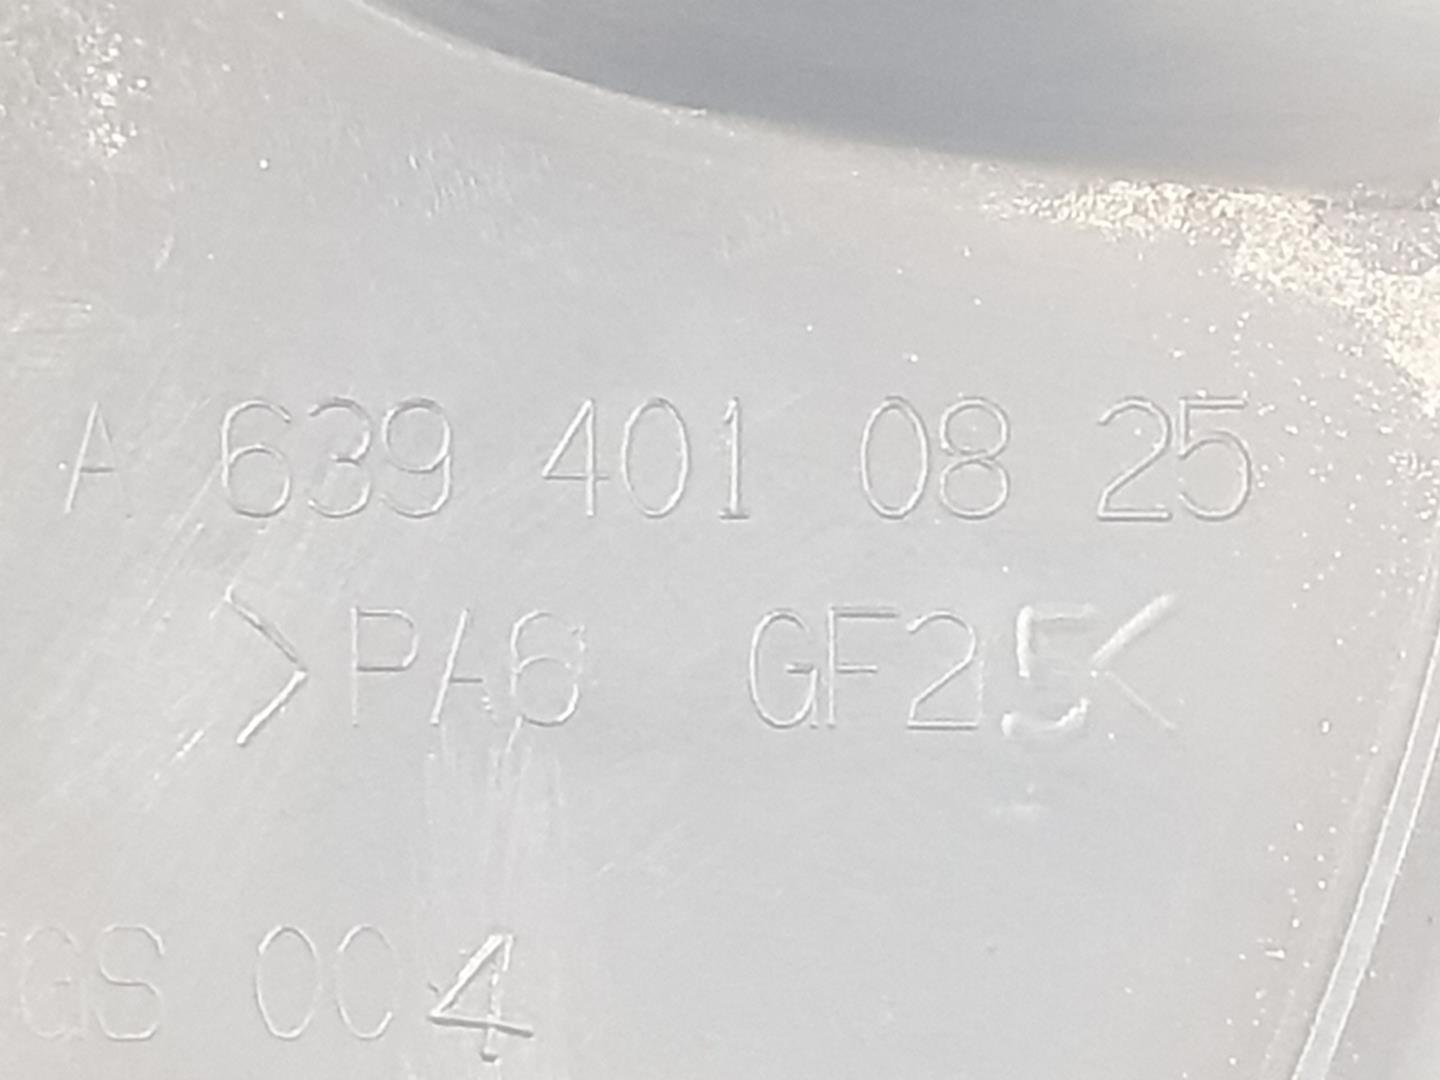 MERCEDES-BENZ Vito W639 (2003-2015) Колпаки на колеса A6394010825, A6394010825 19906961